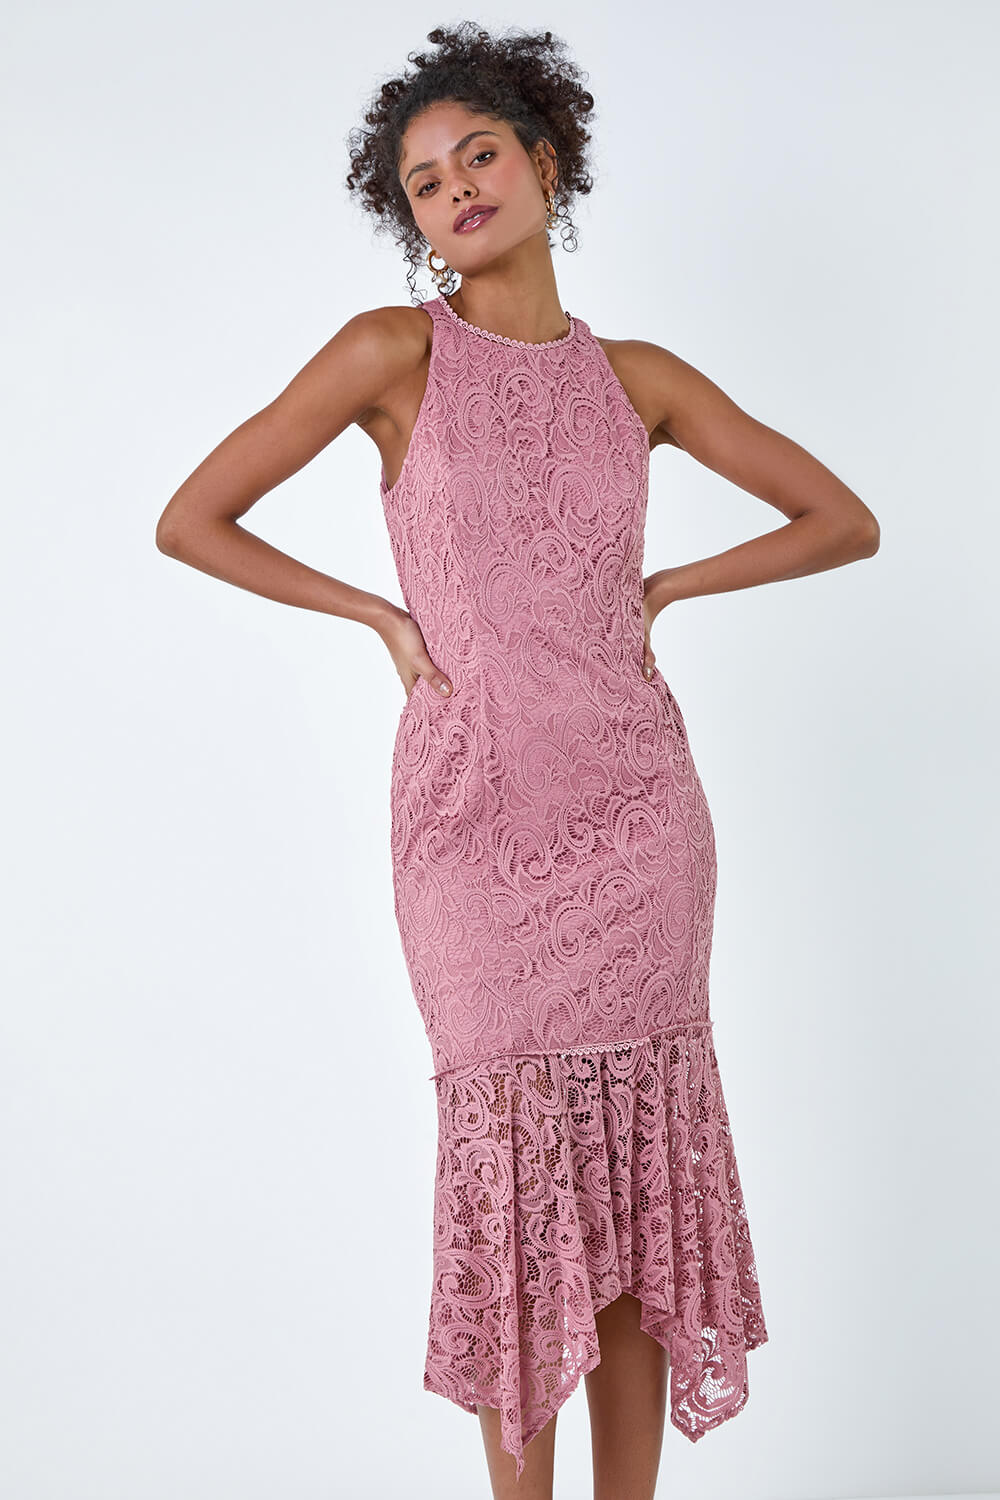 PINK Sleeveless Stretch Lace Midi Dress, Image 6 of 6